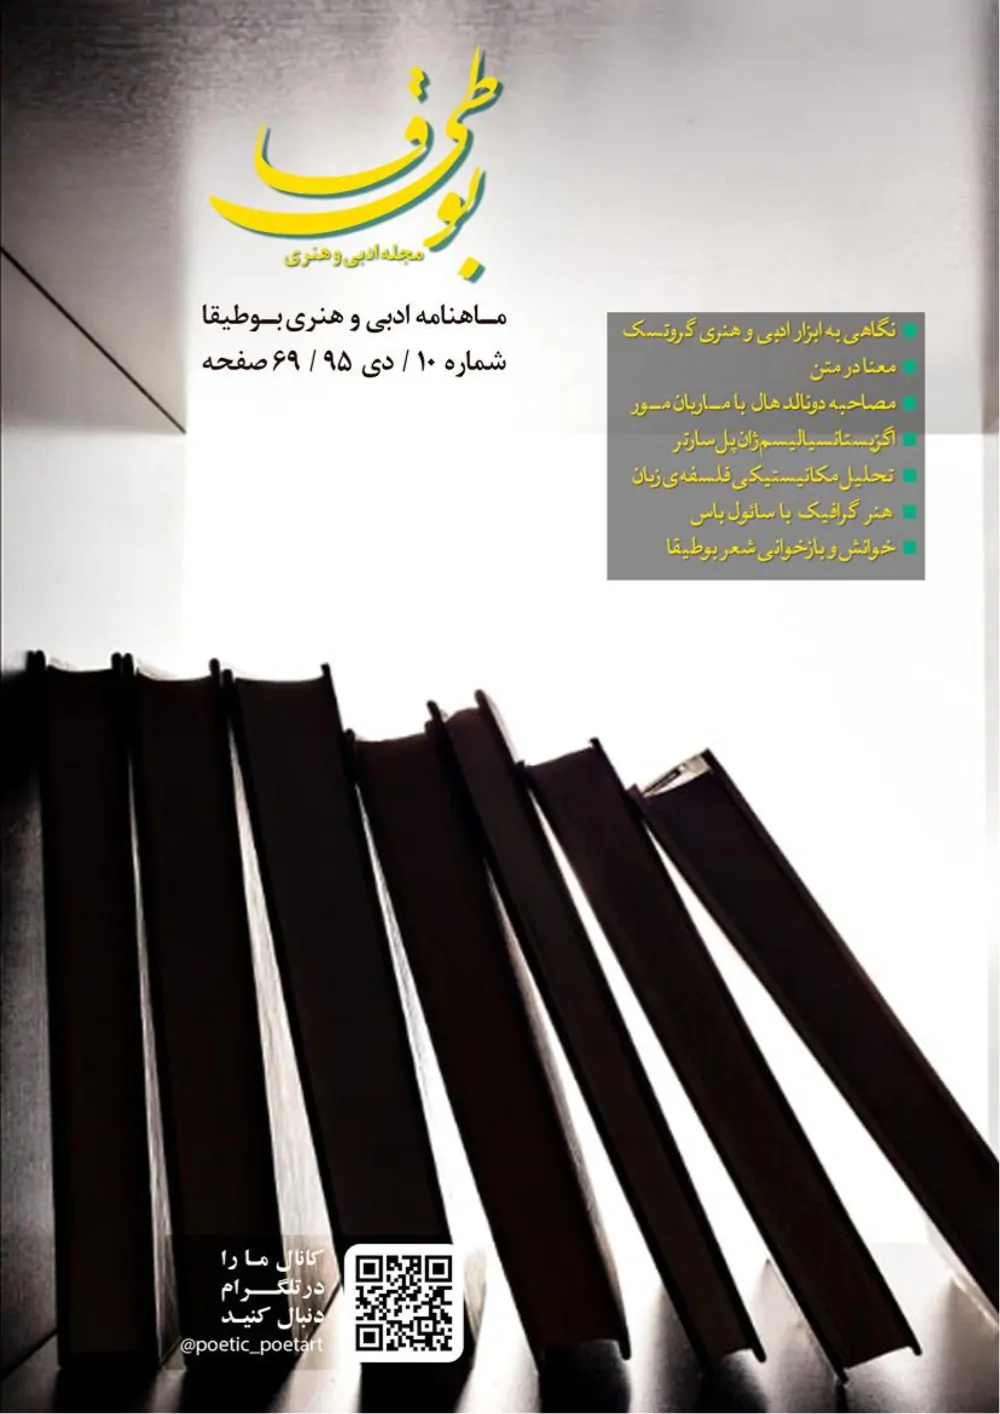 مجله ادبی بوطیقا - شماره ۱۰ - دی ۱۳۹۵